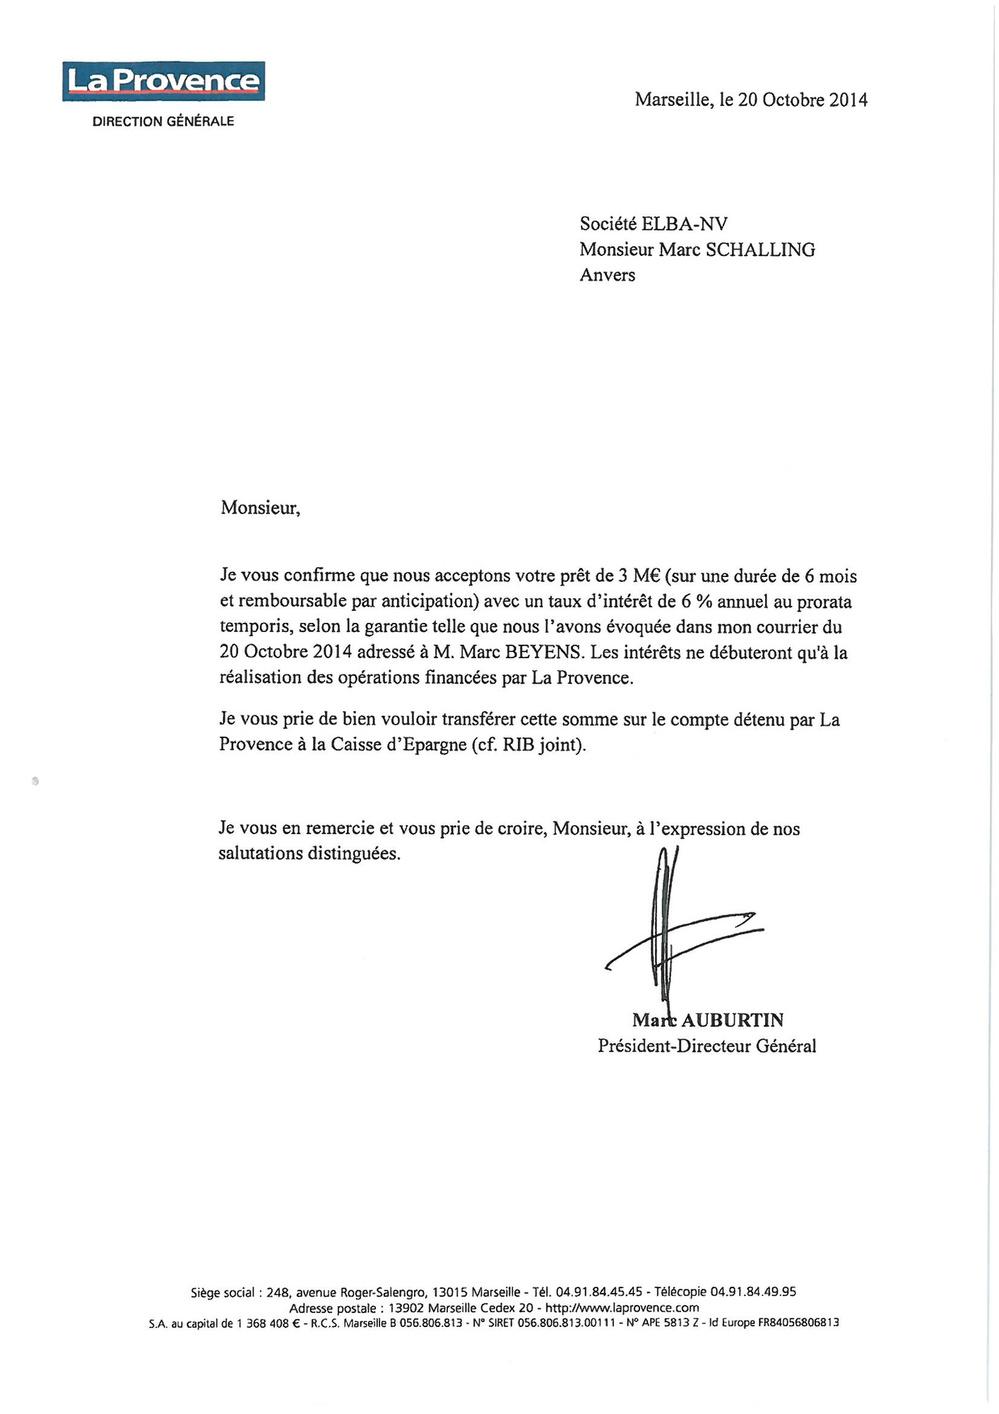 La lettre de Marc Auburtin, PDG du groupe La Provence, à Marc Schaling, administrateur-délégué d'Elba Advies, par laquelle Auburtin confirme que La Provence emprunte 3 millions d'euros à Elba à du 6% d'intérêts.